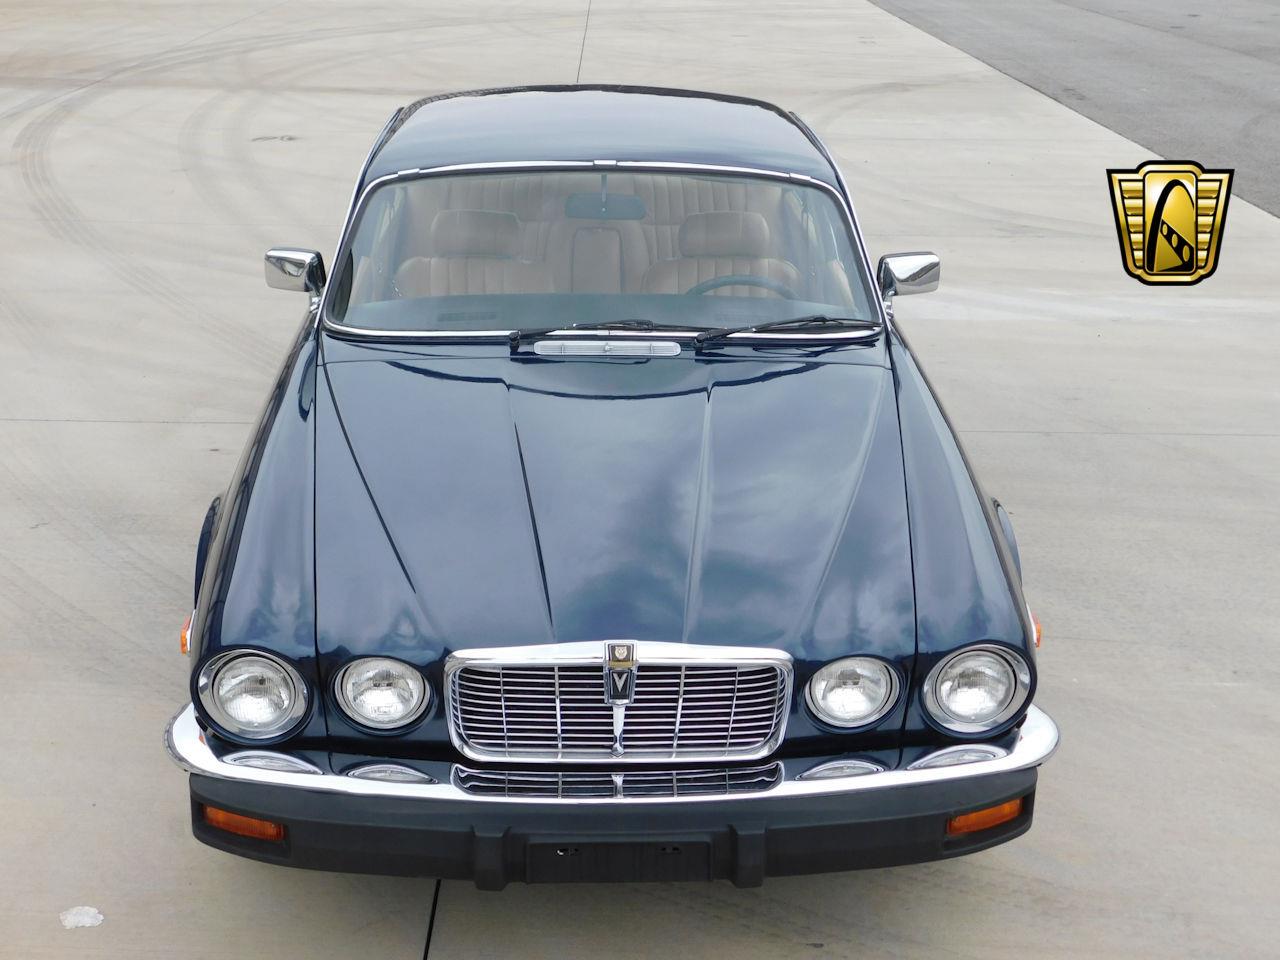 1979 Jaguar XJ12 for Sale | ClassicCars.com | CC-1050659